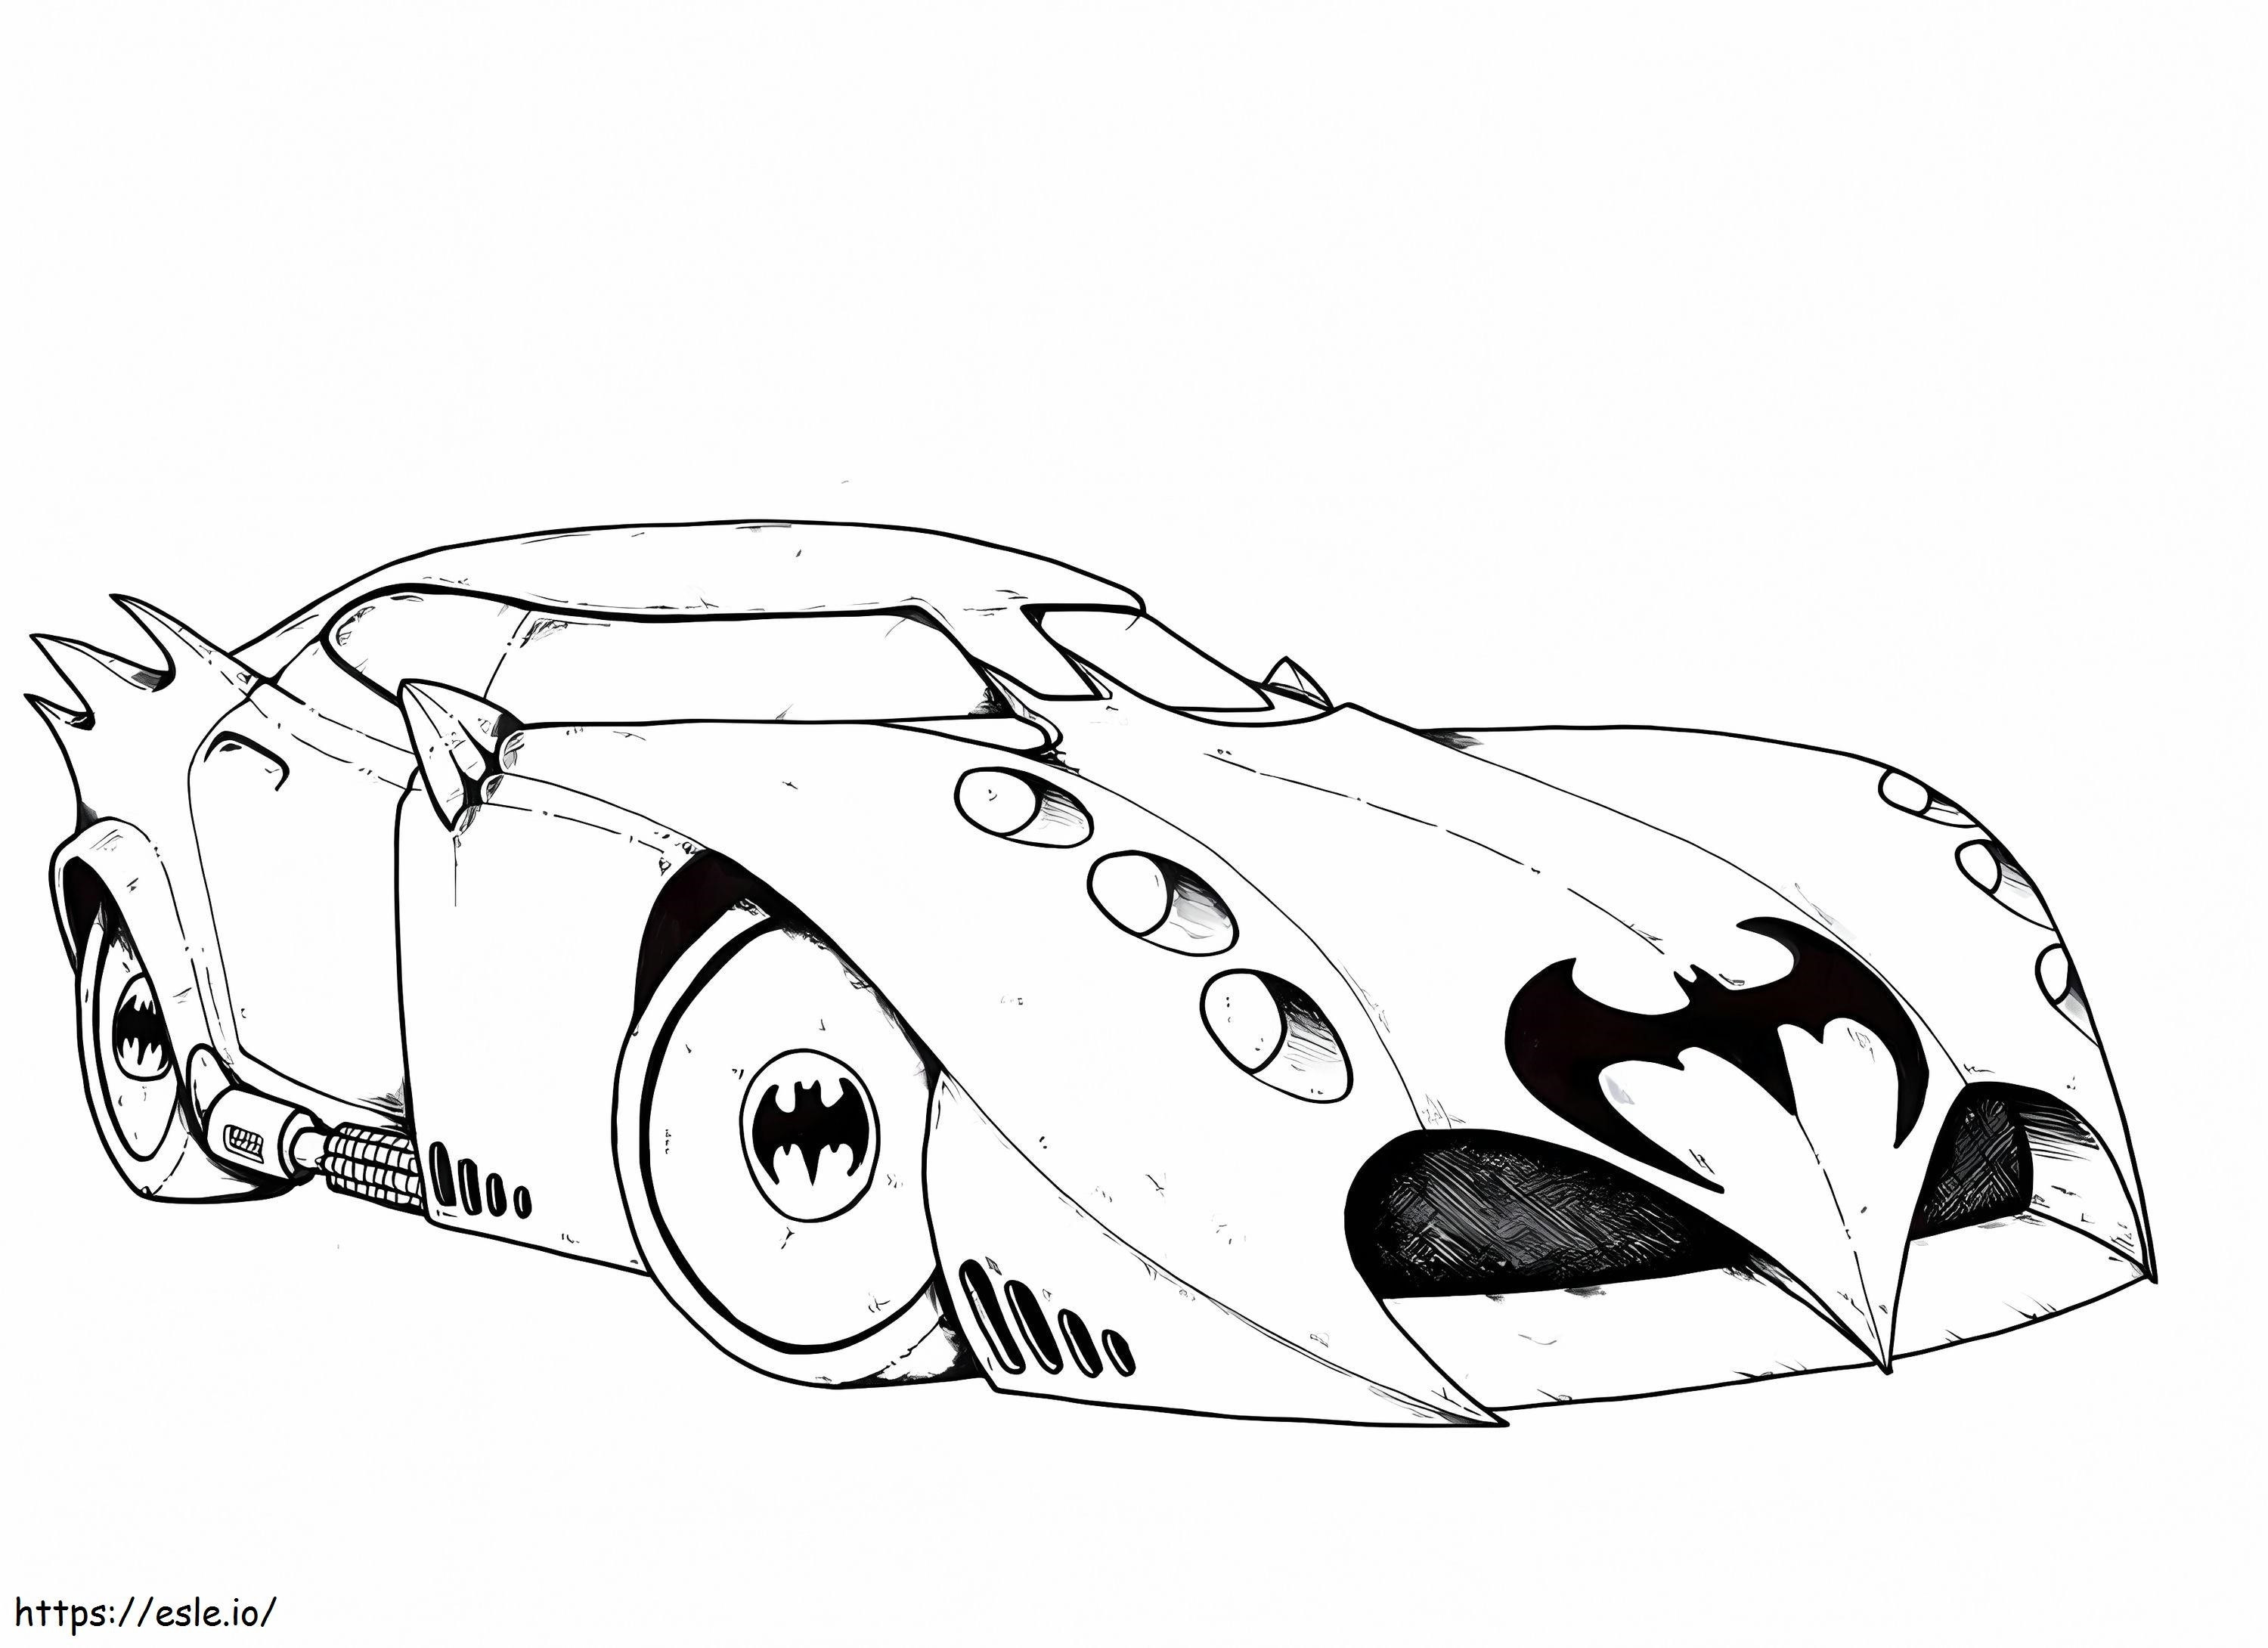 Handgezeichnetes Batmobil ausmalbilder